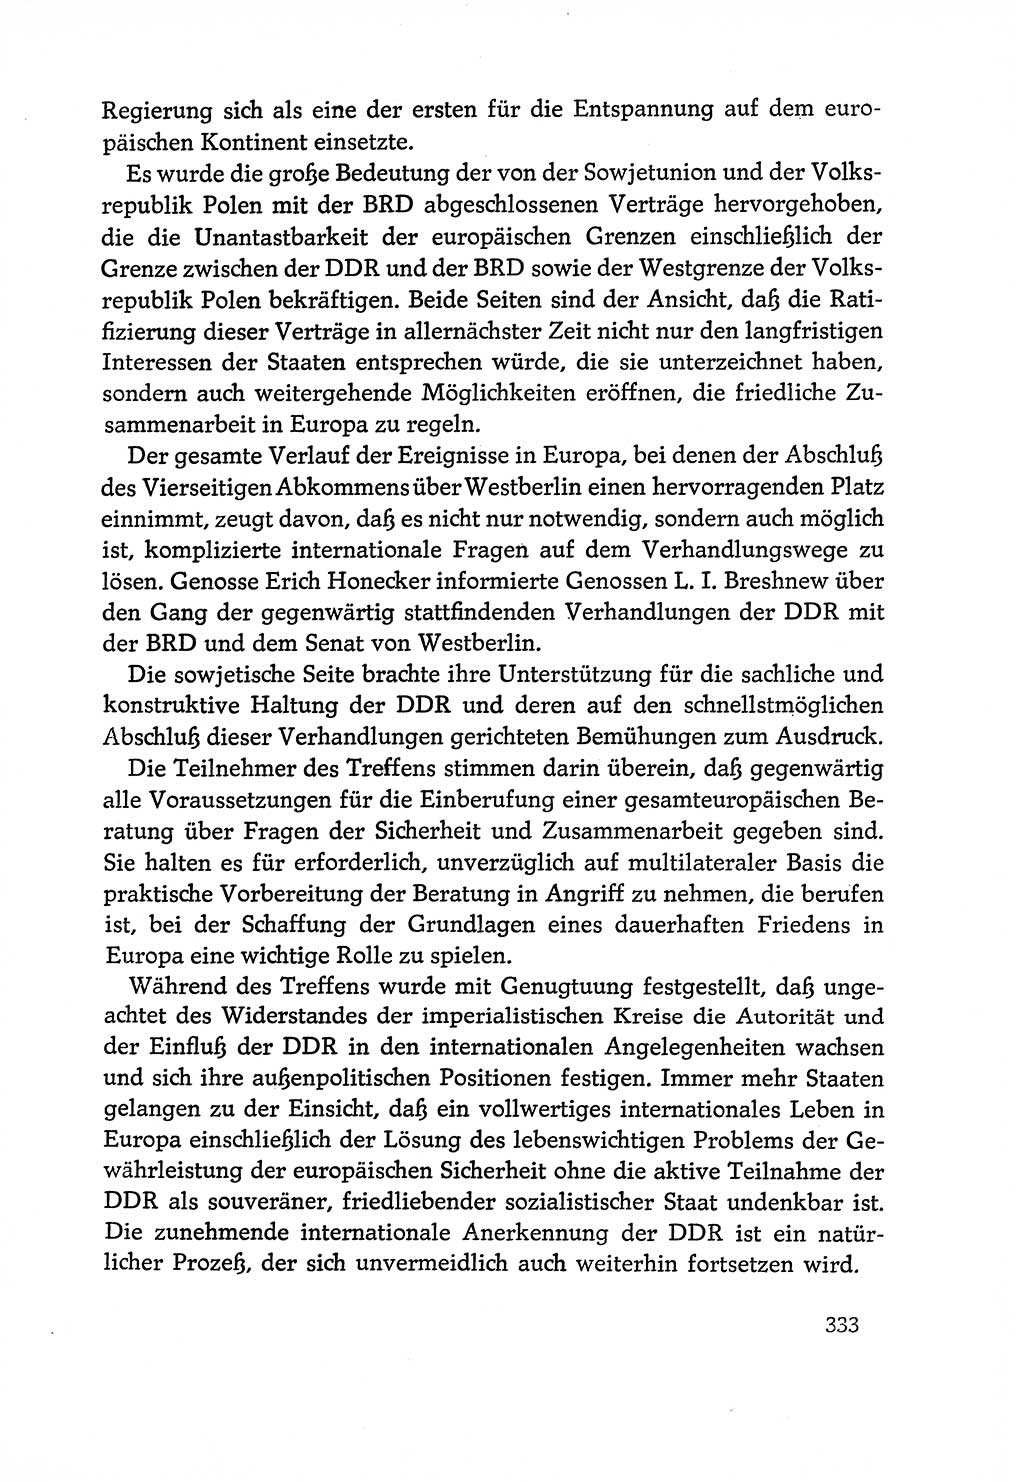 Dokumente der Sozialistischen Einheitspartei Deutschlands (SED) [Deutsche Demokratische Republik (DDR)] 1970-1971, Seite 333 (Dok. SED DDR 1970-1971, S. 333)